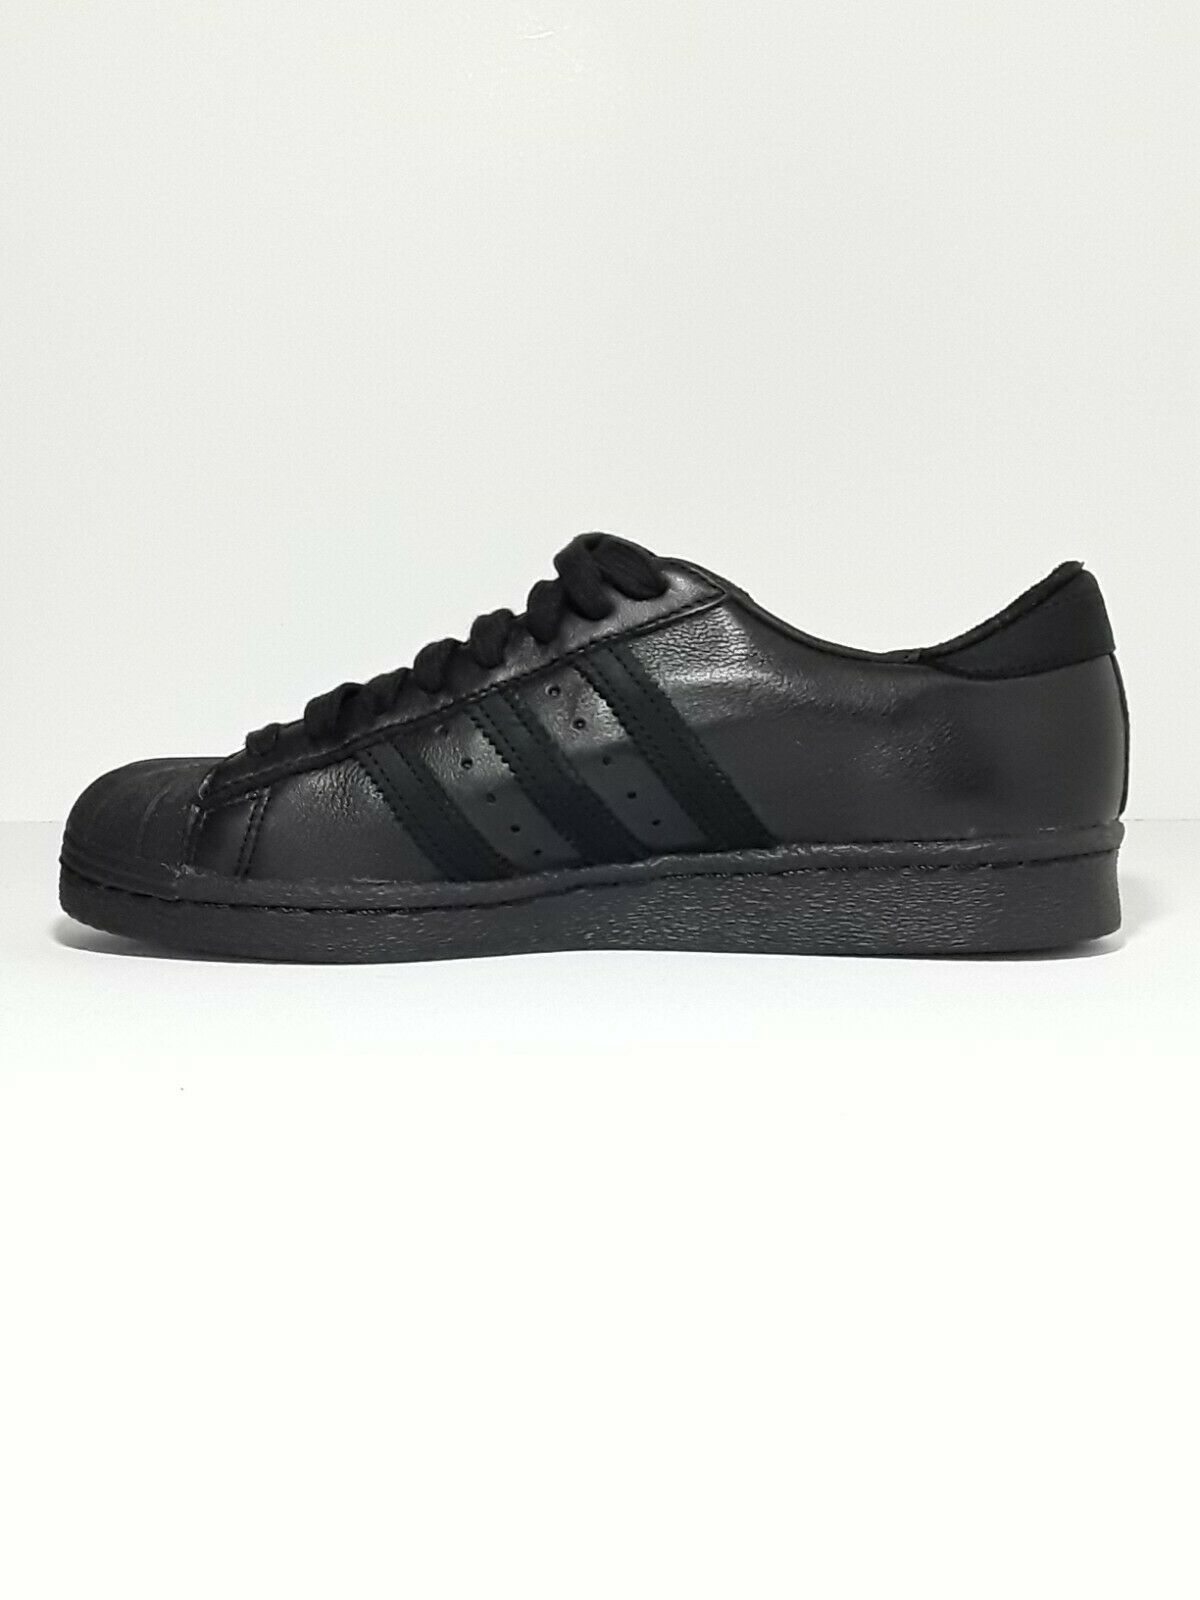 Adidas Superstar 80s Recon Men's Triple Black Shell Toe sneaker EE7391 ...